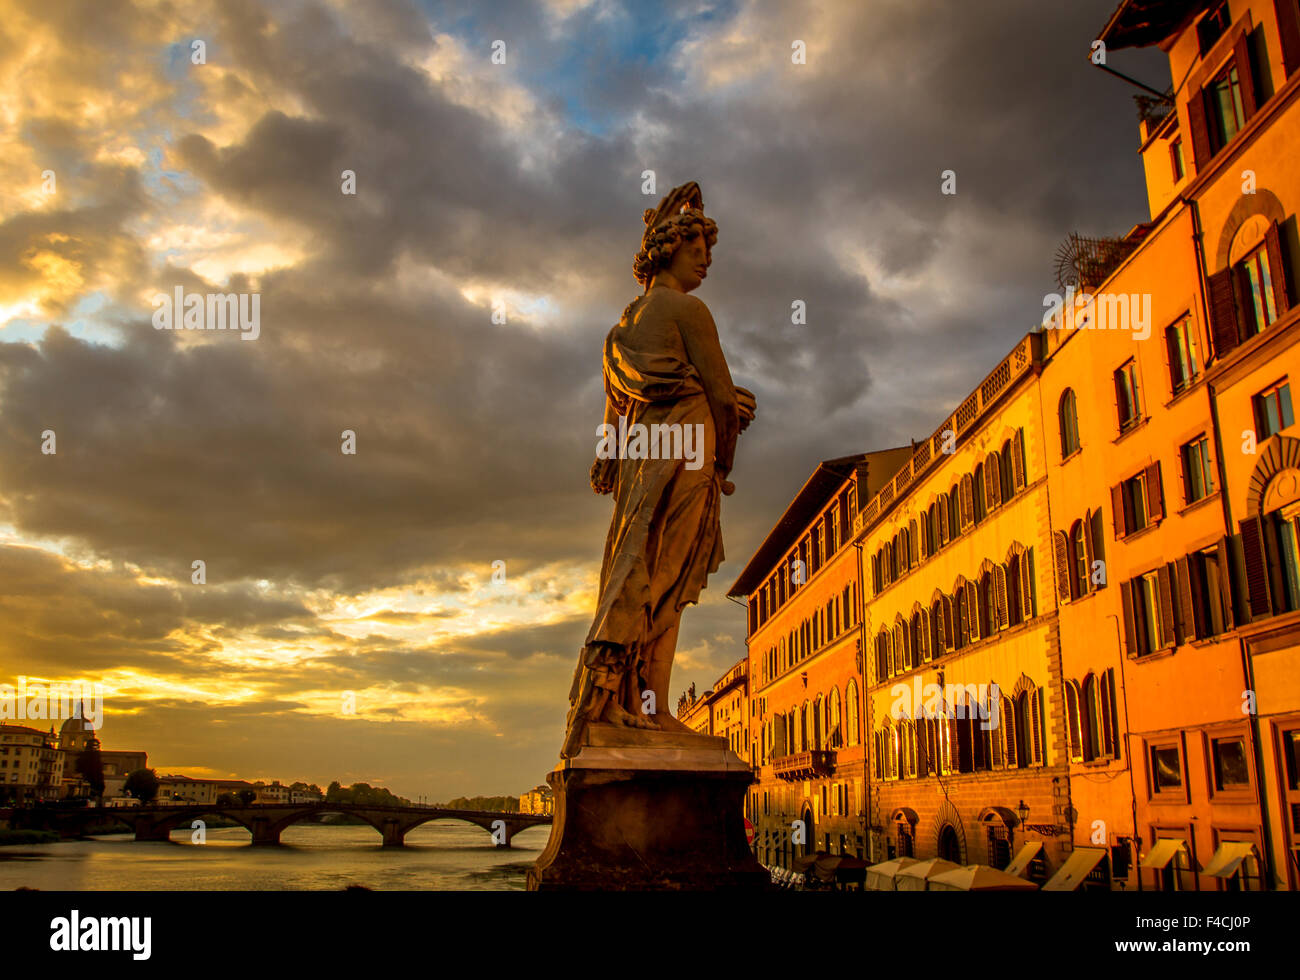 Statua sul ponte di Santa Trinita a Firenze sul fiume Arno, Toscana, Italia Foto Stock